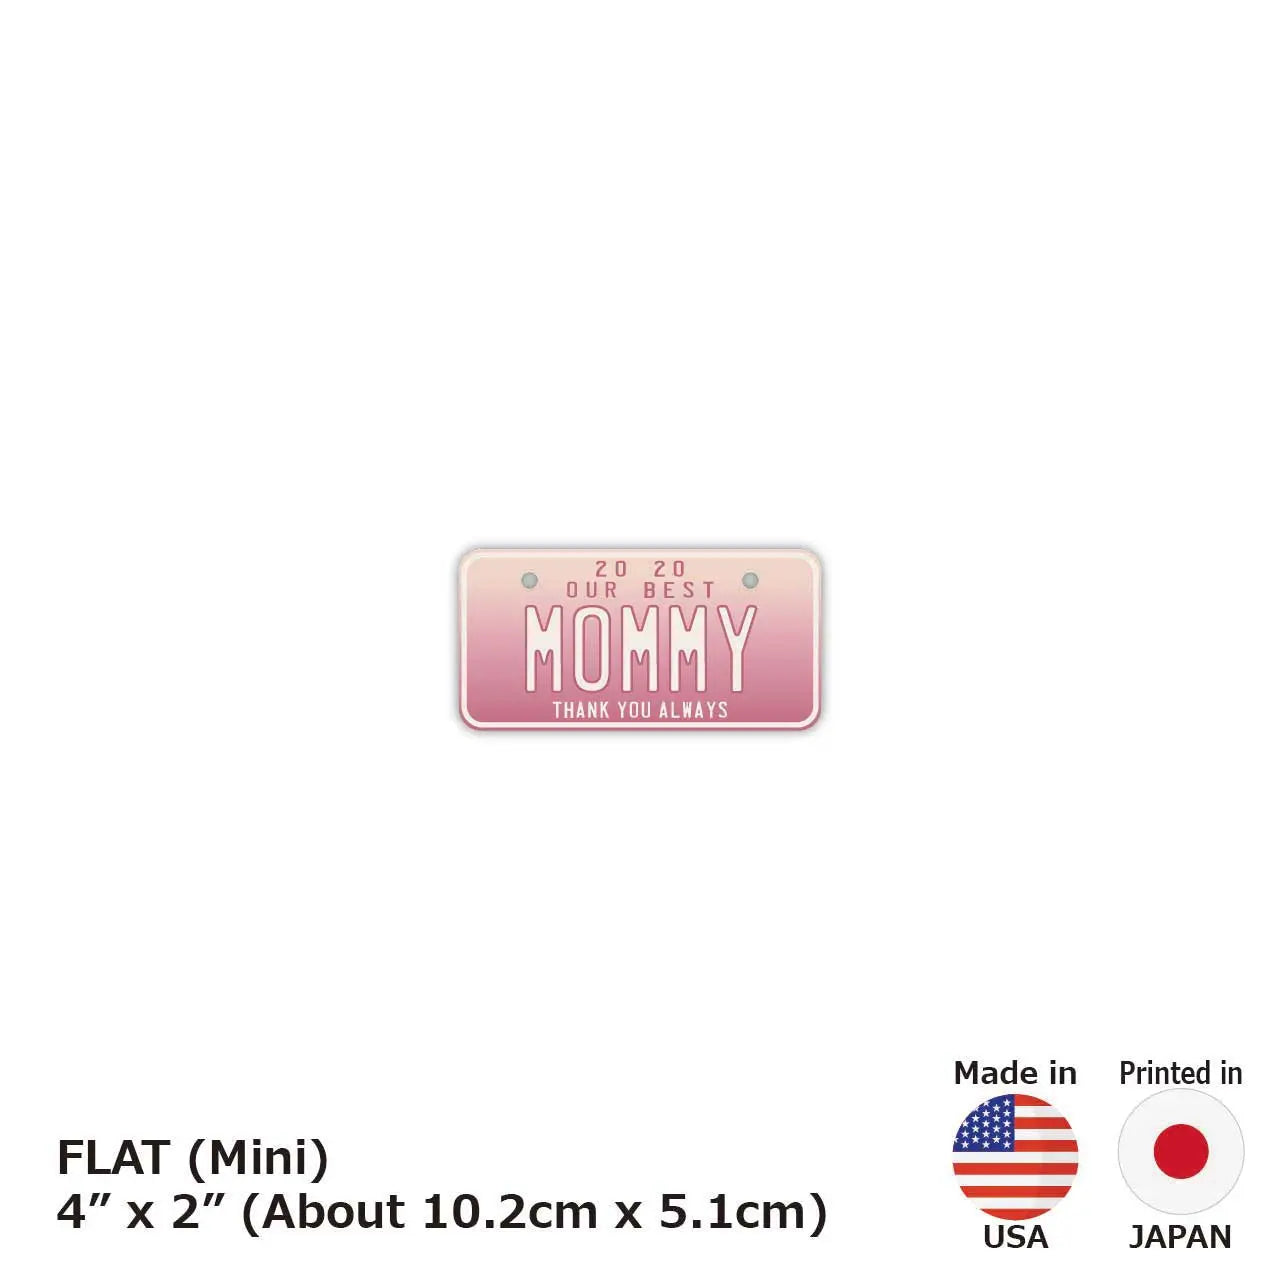 【ミニ】母の日・グラデーション/オリジナルアメリカナンバープレート PL8HERO